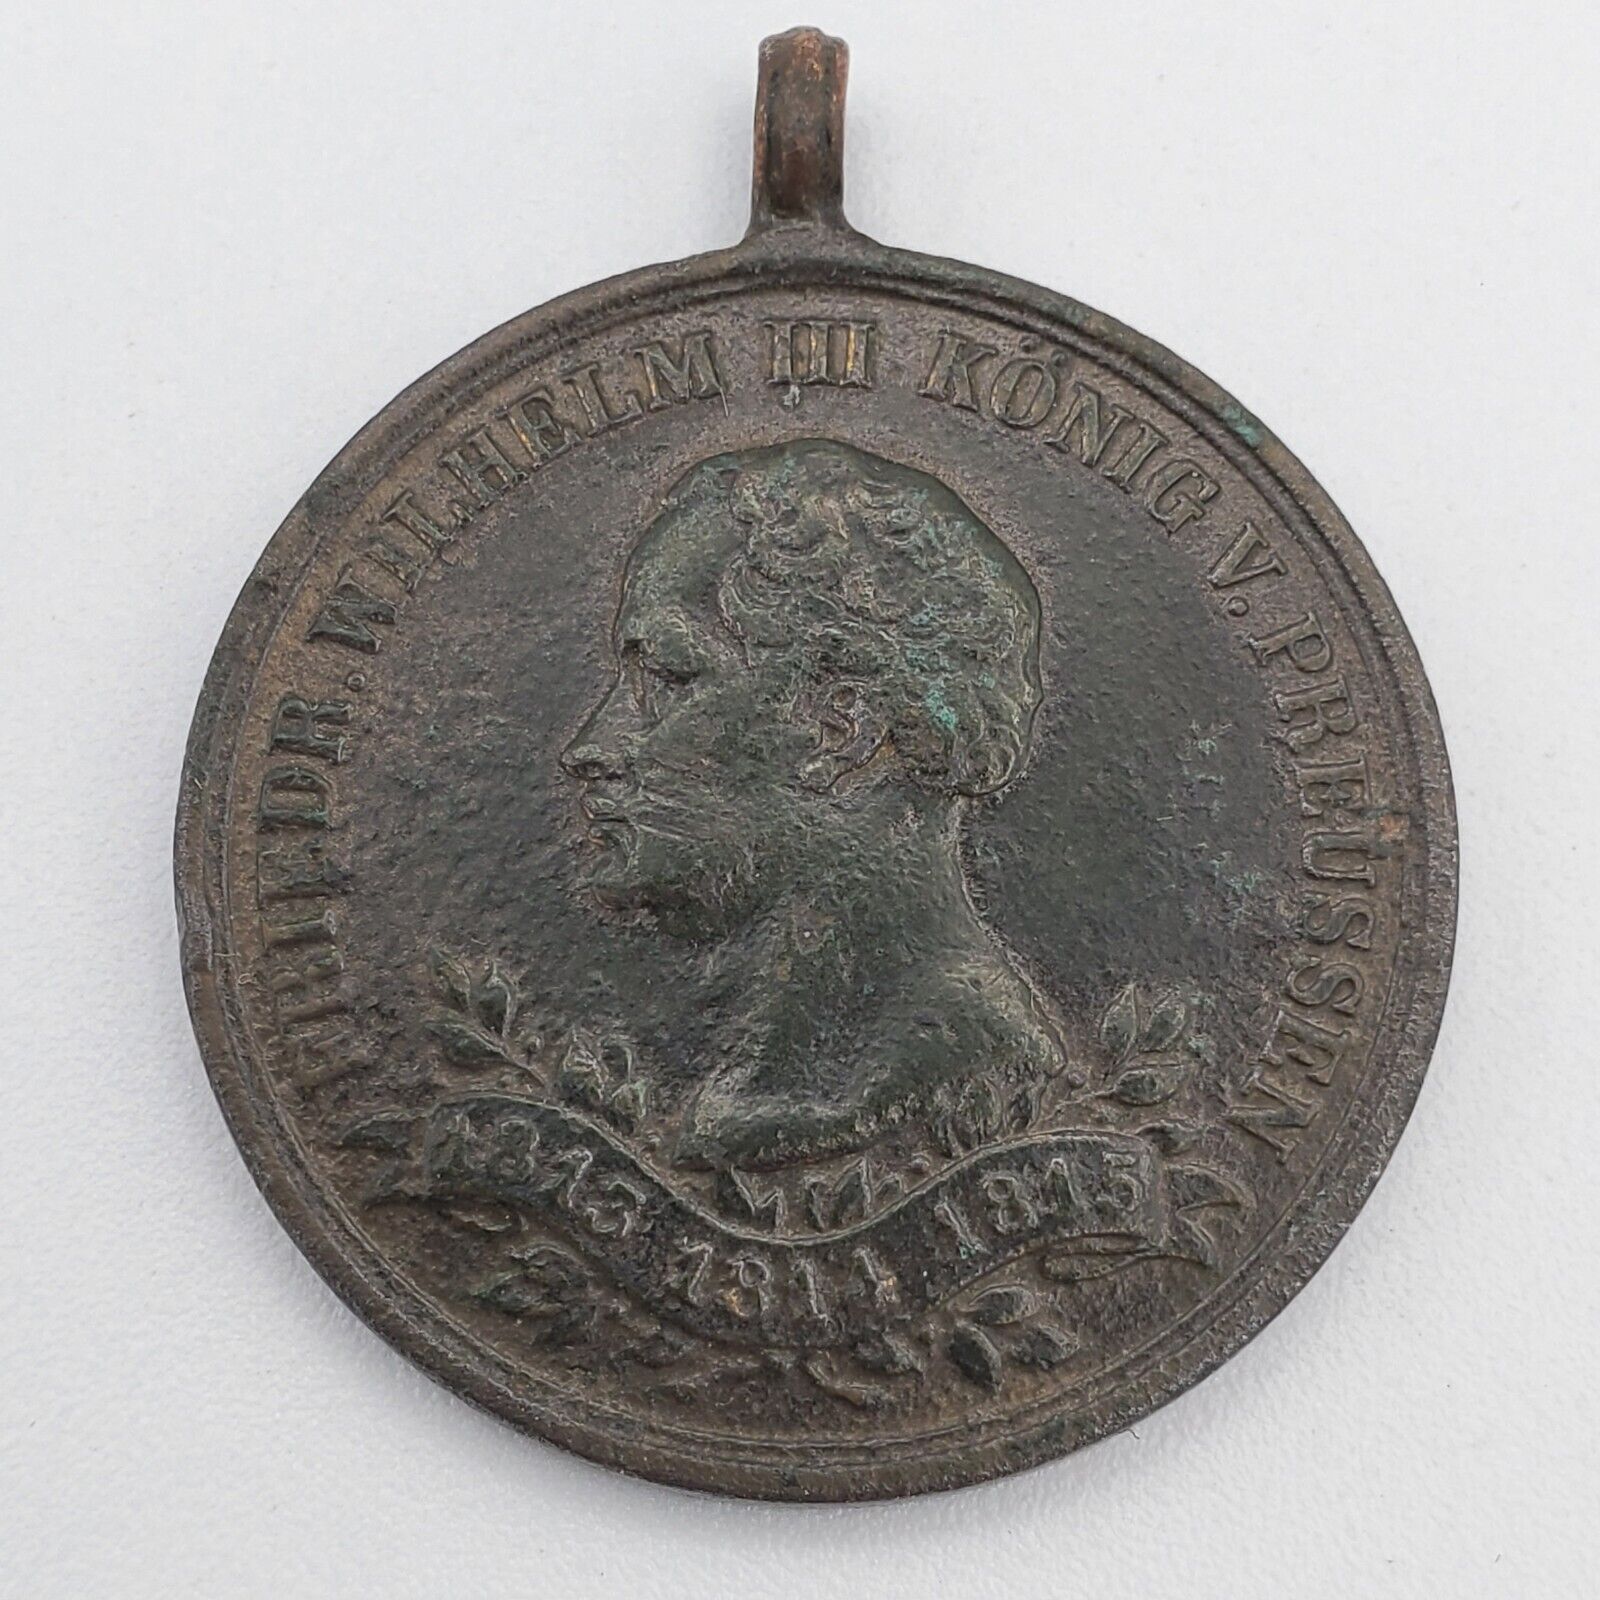 German Napoleonic War medal 1813 1815 1863 Veteran Prussia award badge original